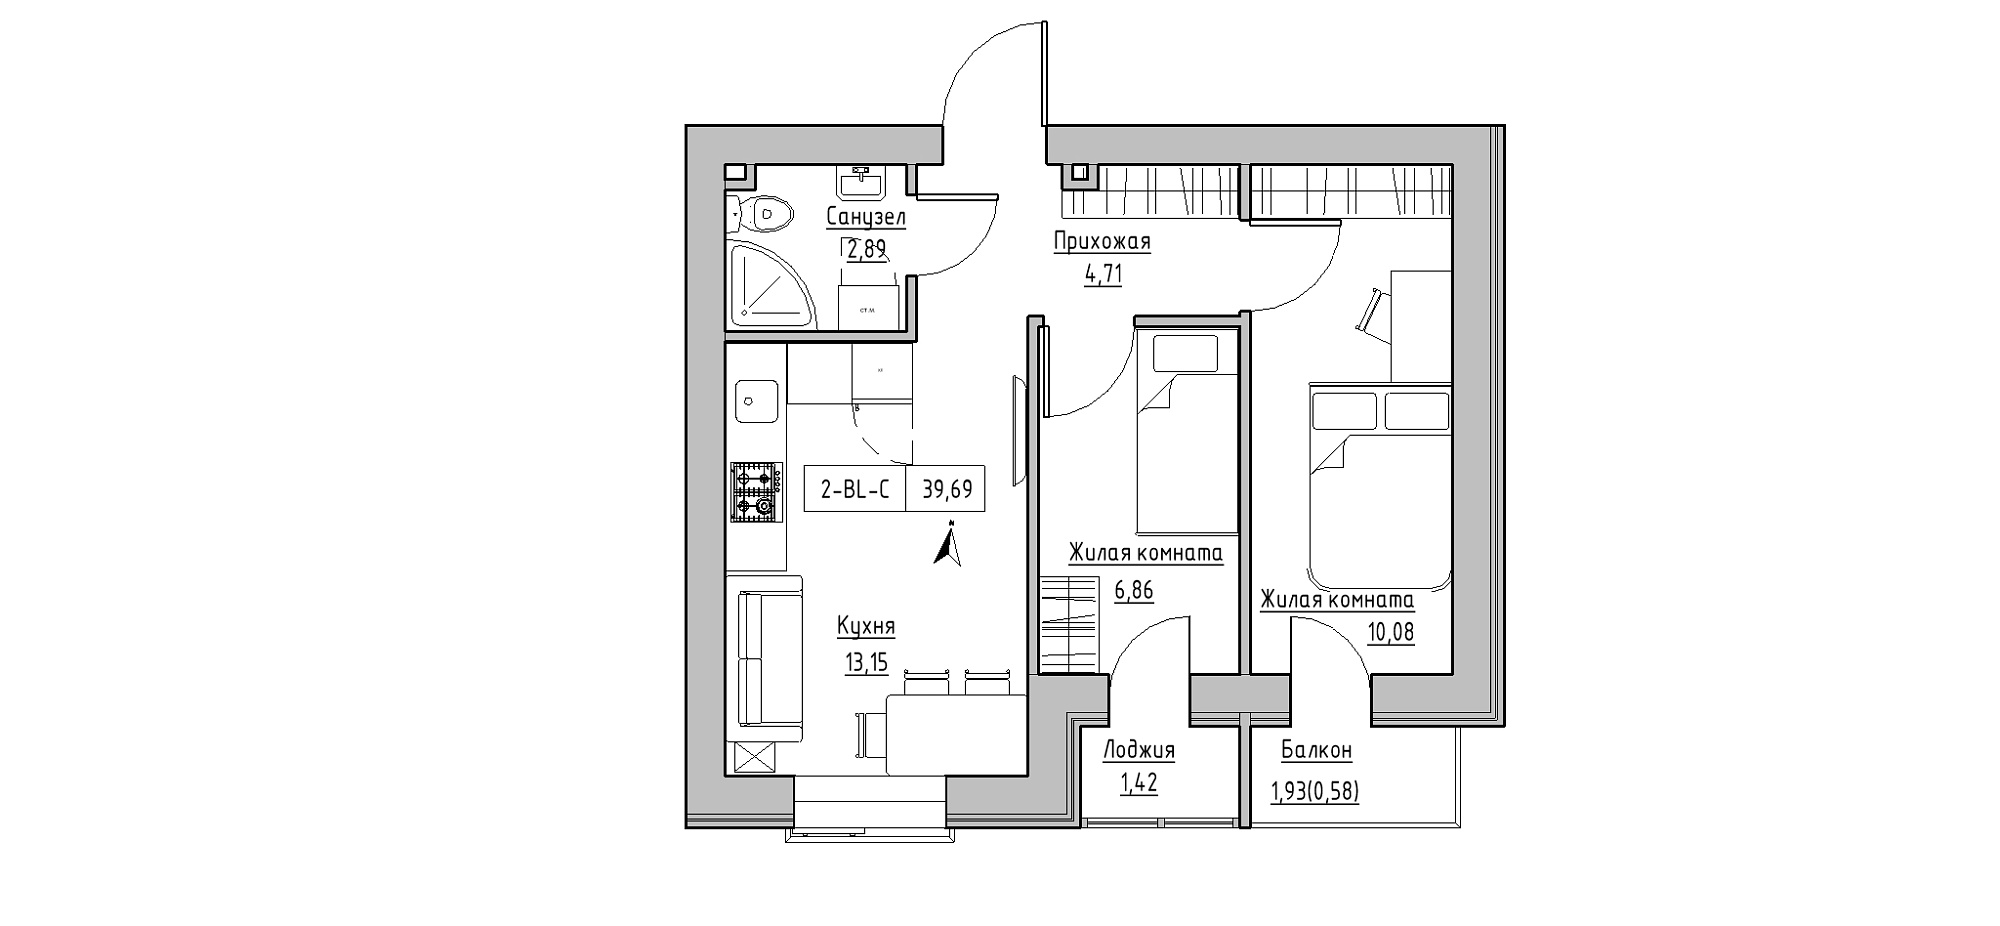 Планування 2-к квартира площею 39.69м2, KS-020-04/0005.